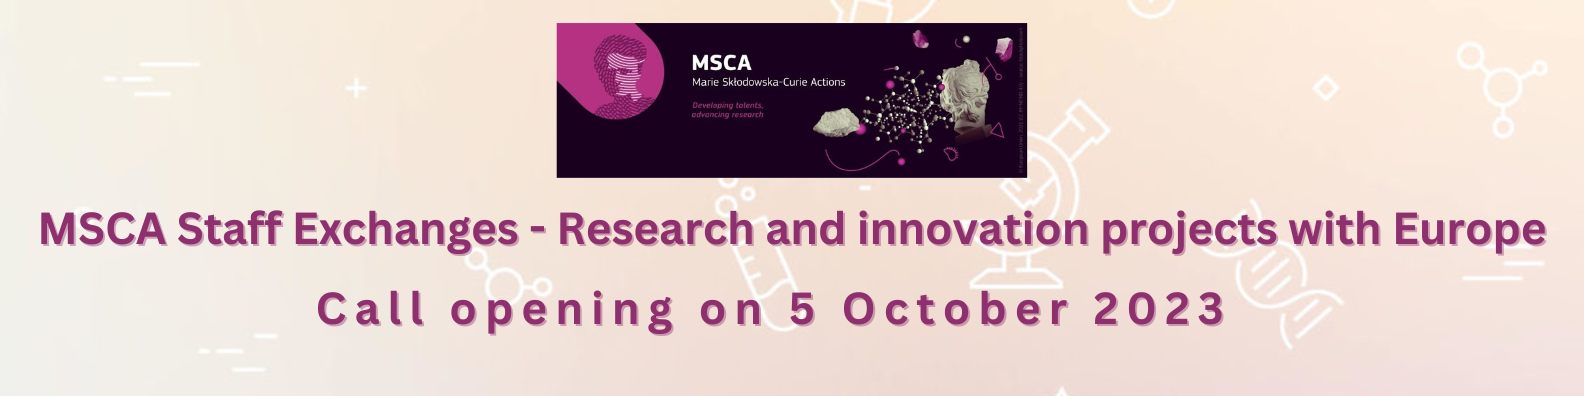 MSCA SE 23 web banner